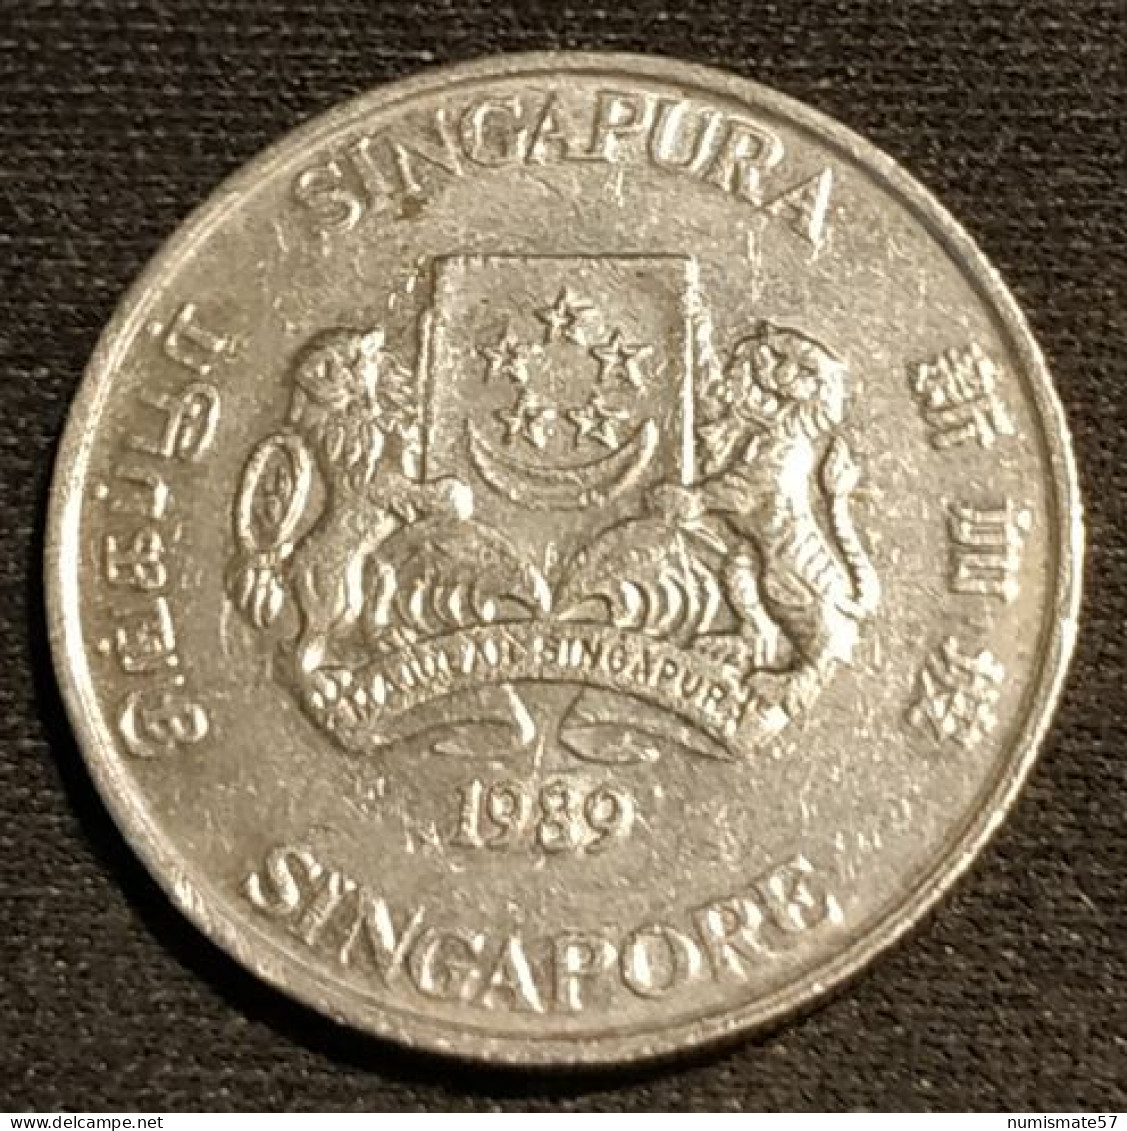 SINGAPOUR - SINGAPORE - 20 CENTS 1989 - KM 52 - ( Blason Haut ) - Singapore